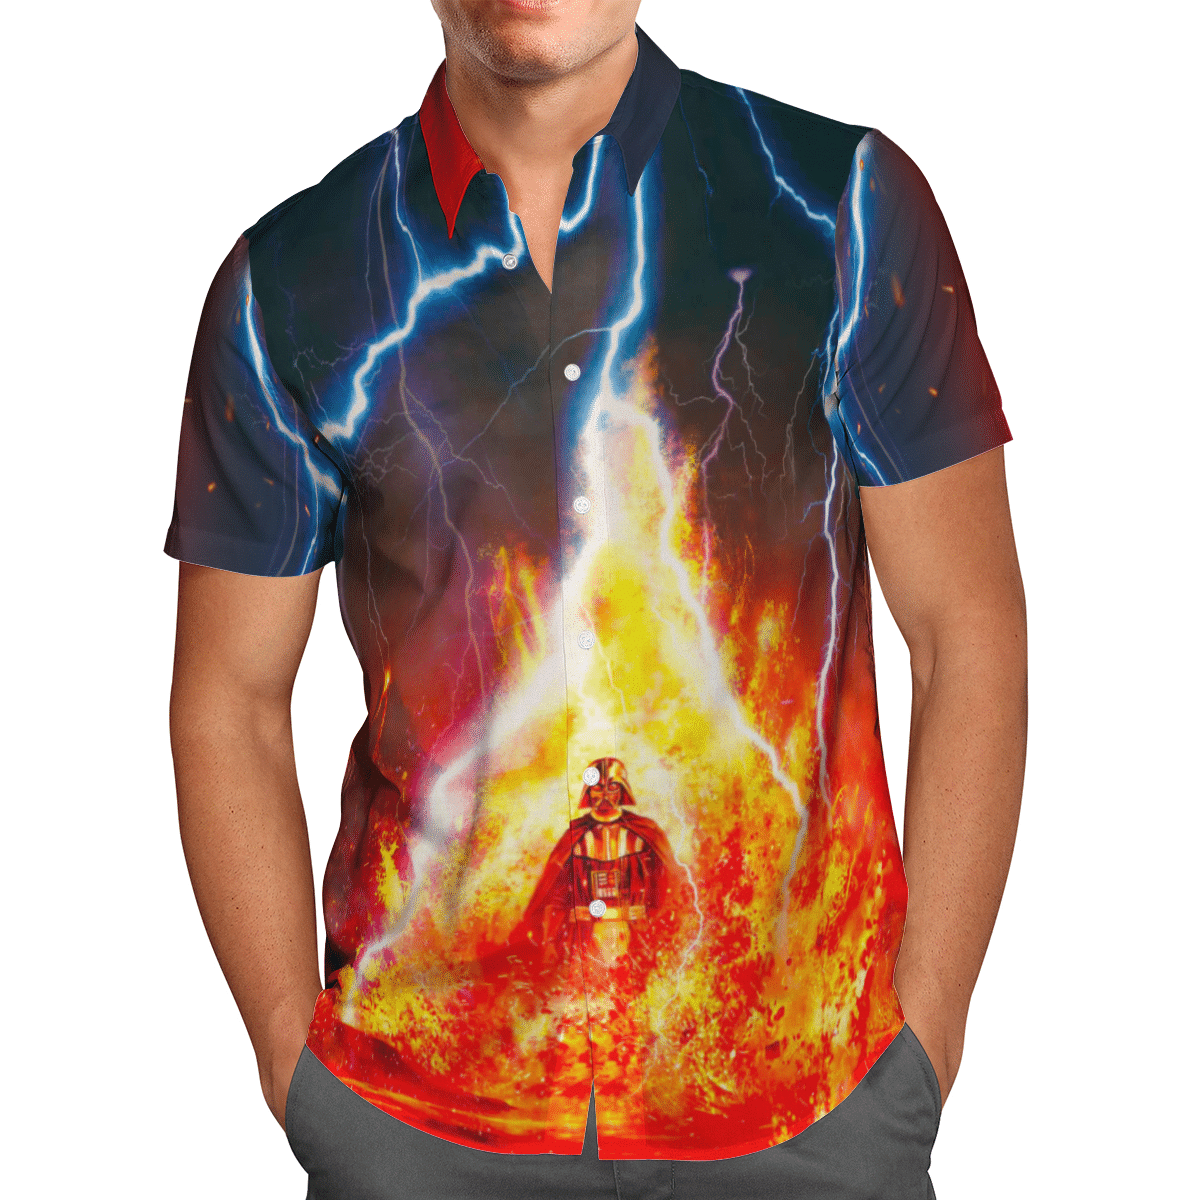 Darth Vader Fire and Thunder Star Wars Hawaiian Shirt